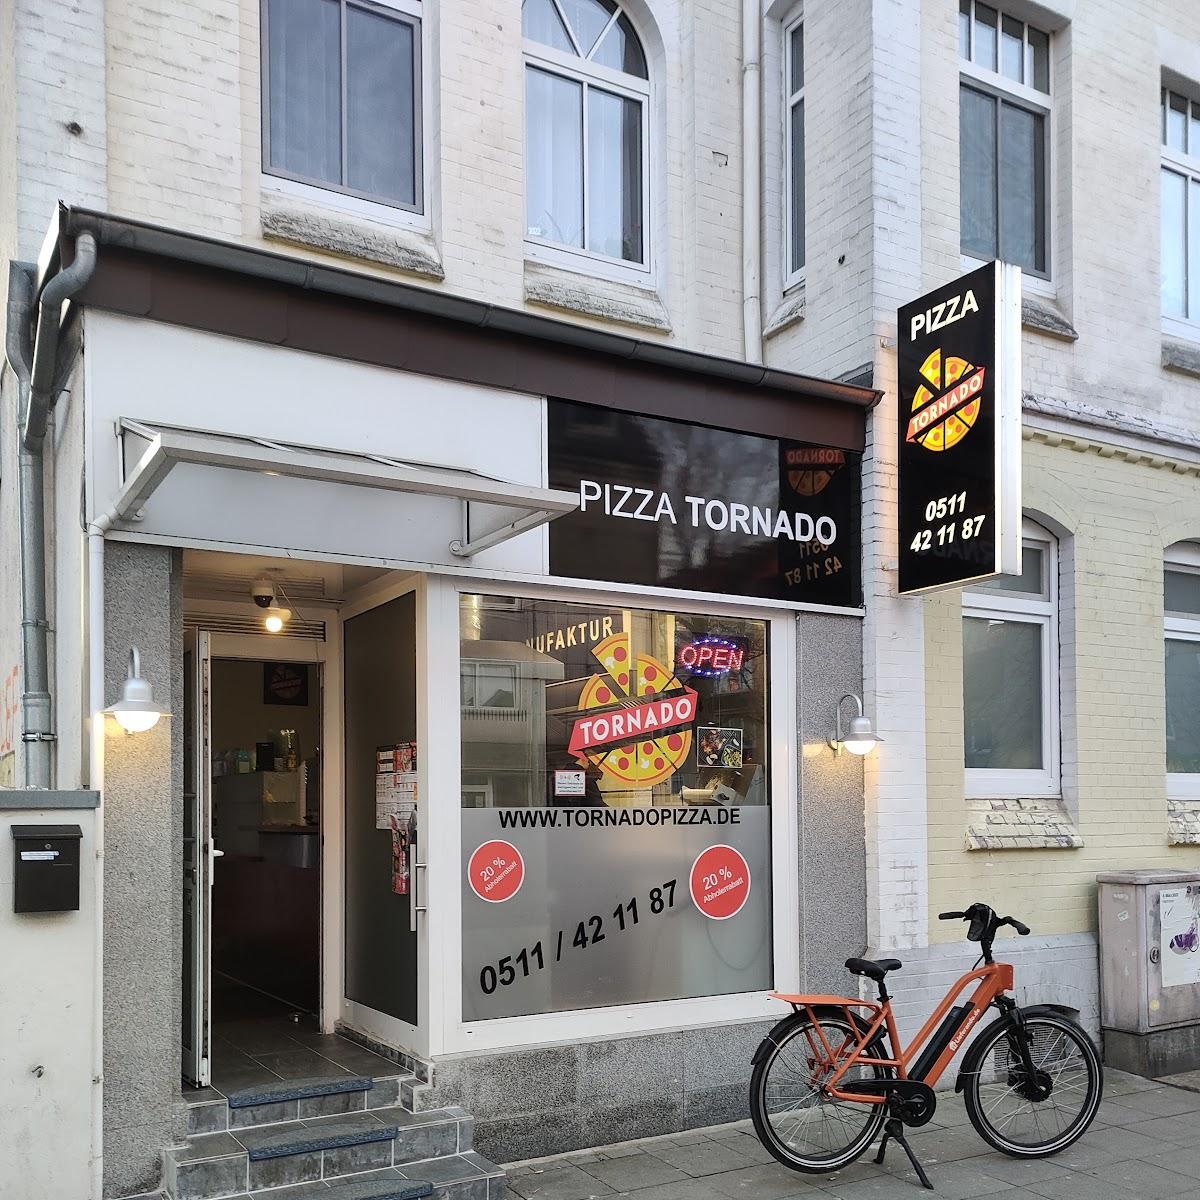 Restaurant "Pizza Tornado Ricklingen" in Hannover